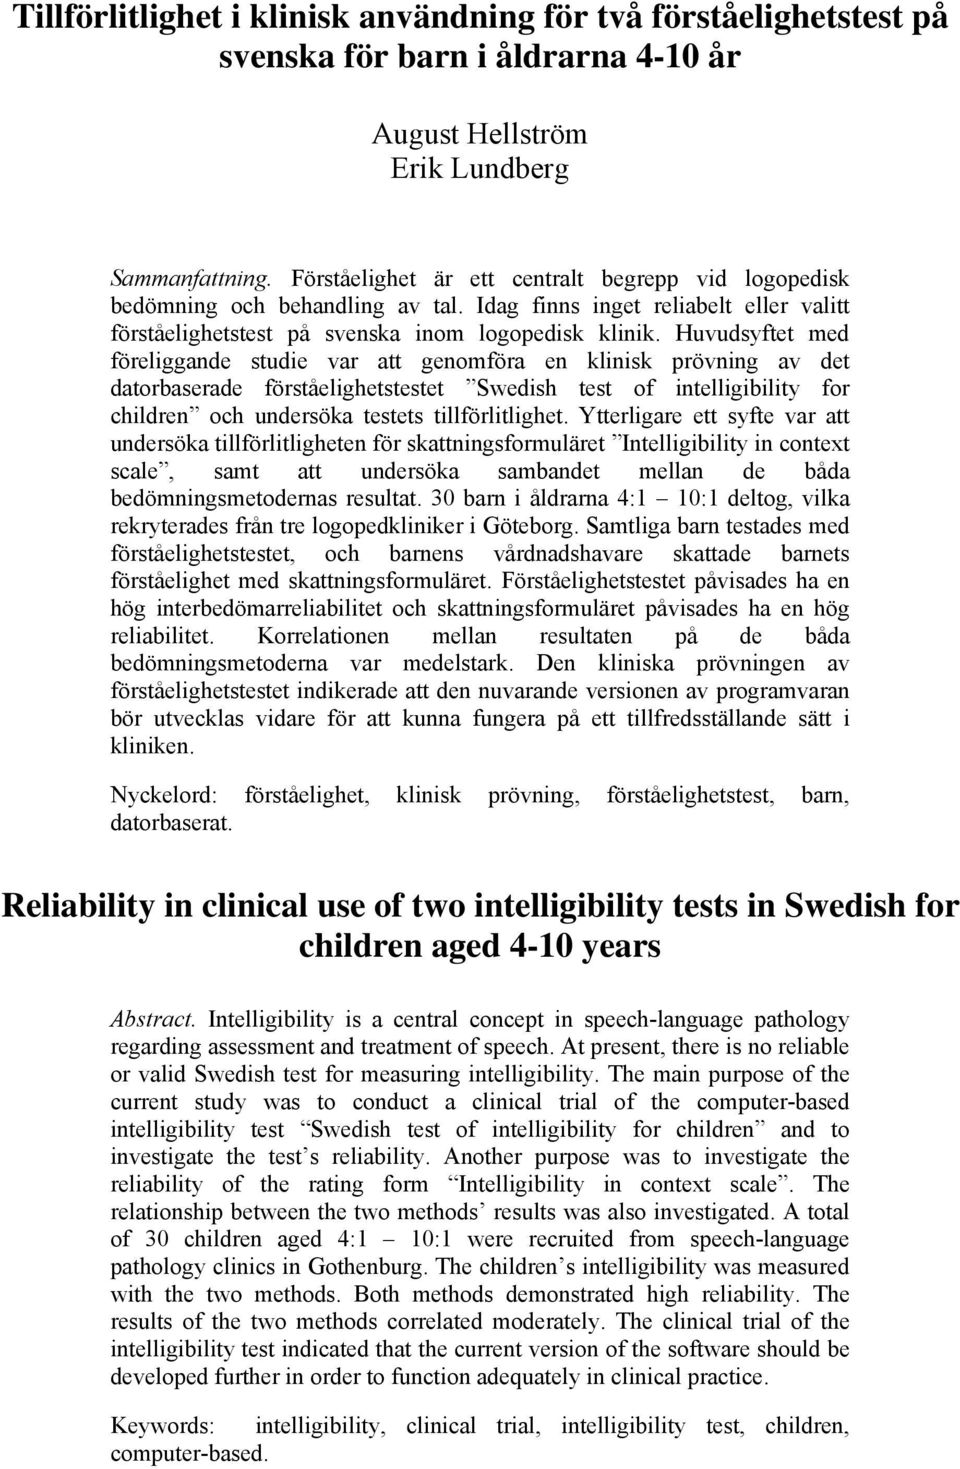 Huvudsyftet med föreliggande studie var att genomföra en klinisk prövning av det datorbaserade förståelighetstestet Swedish test of intelligibility for children och undersöka testets tillförlitlighet.